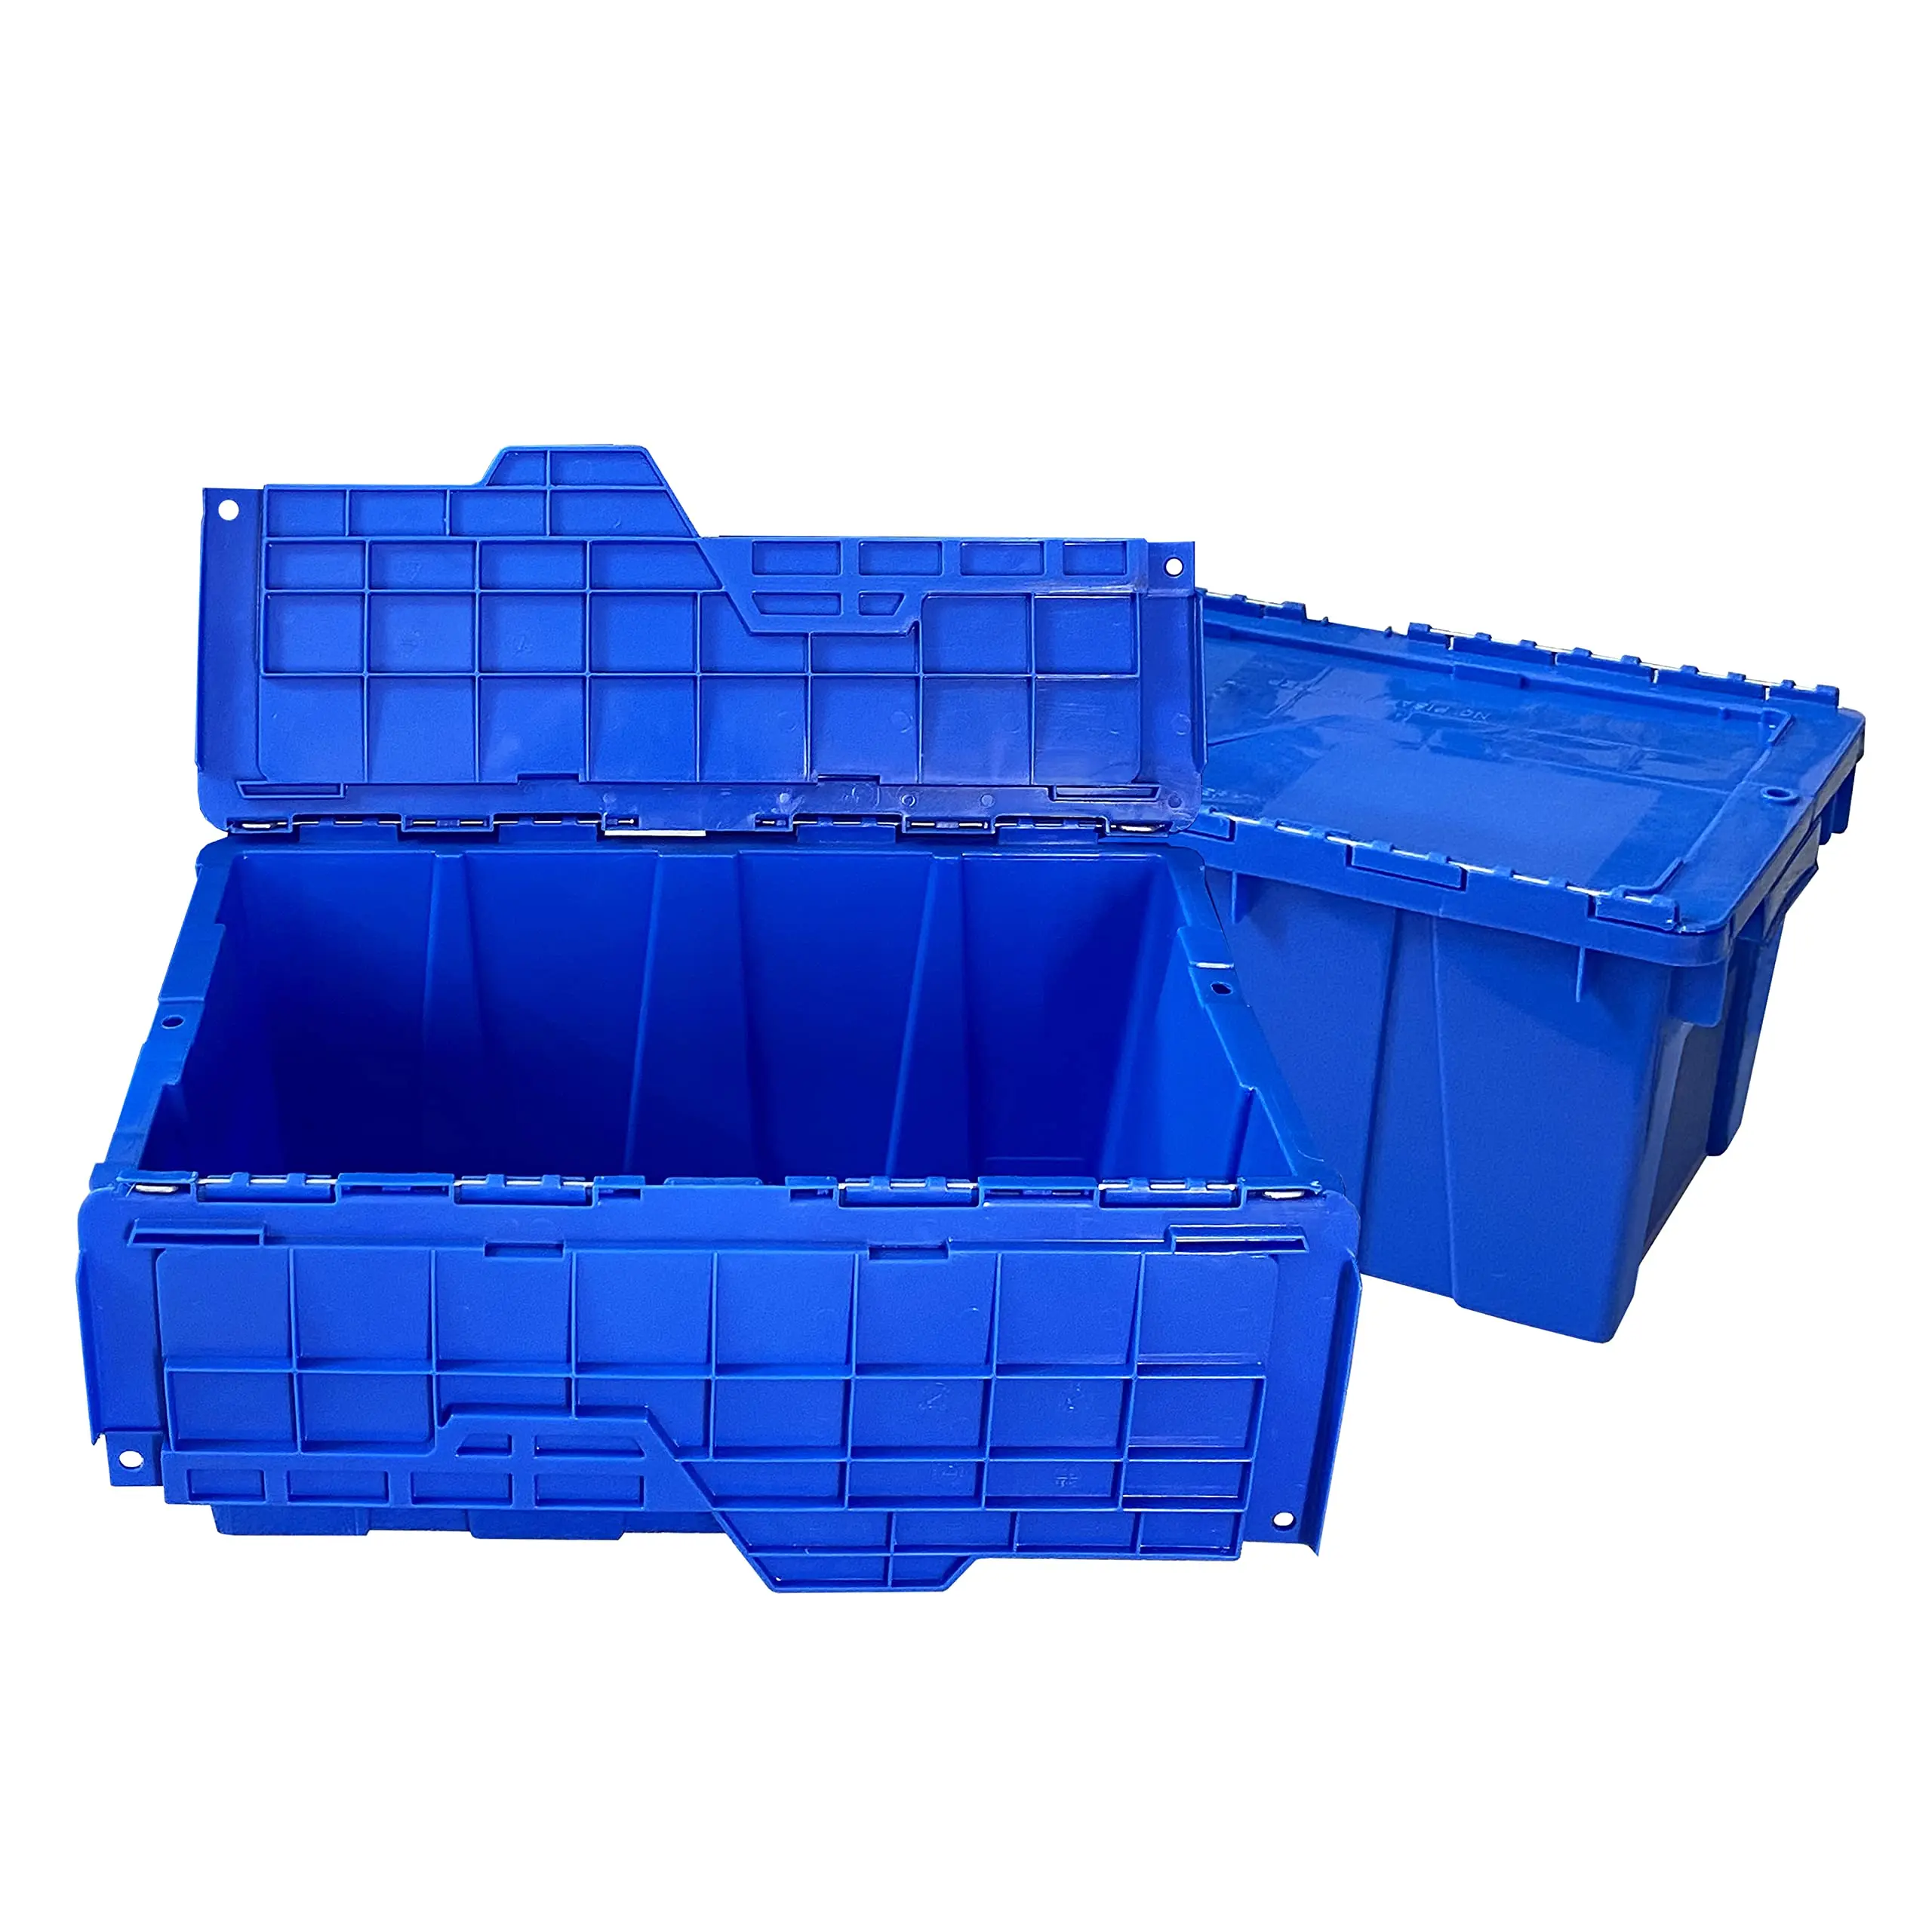 cajas azules de plastico - Cómo se llaman las cajas azules